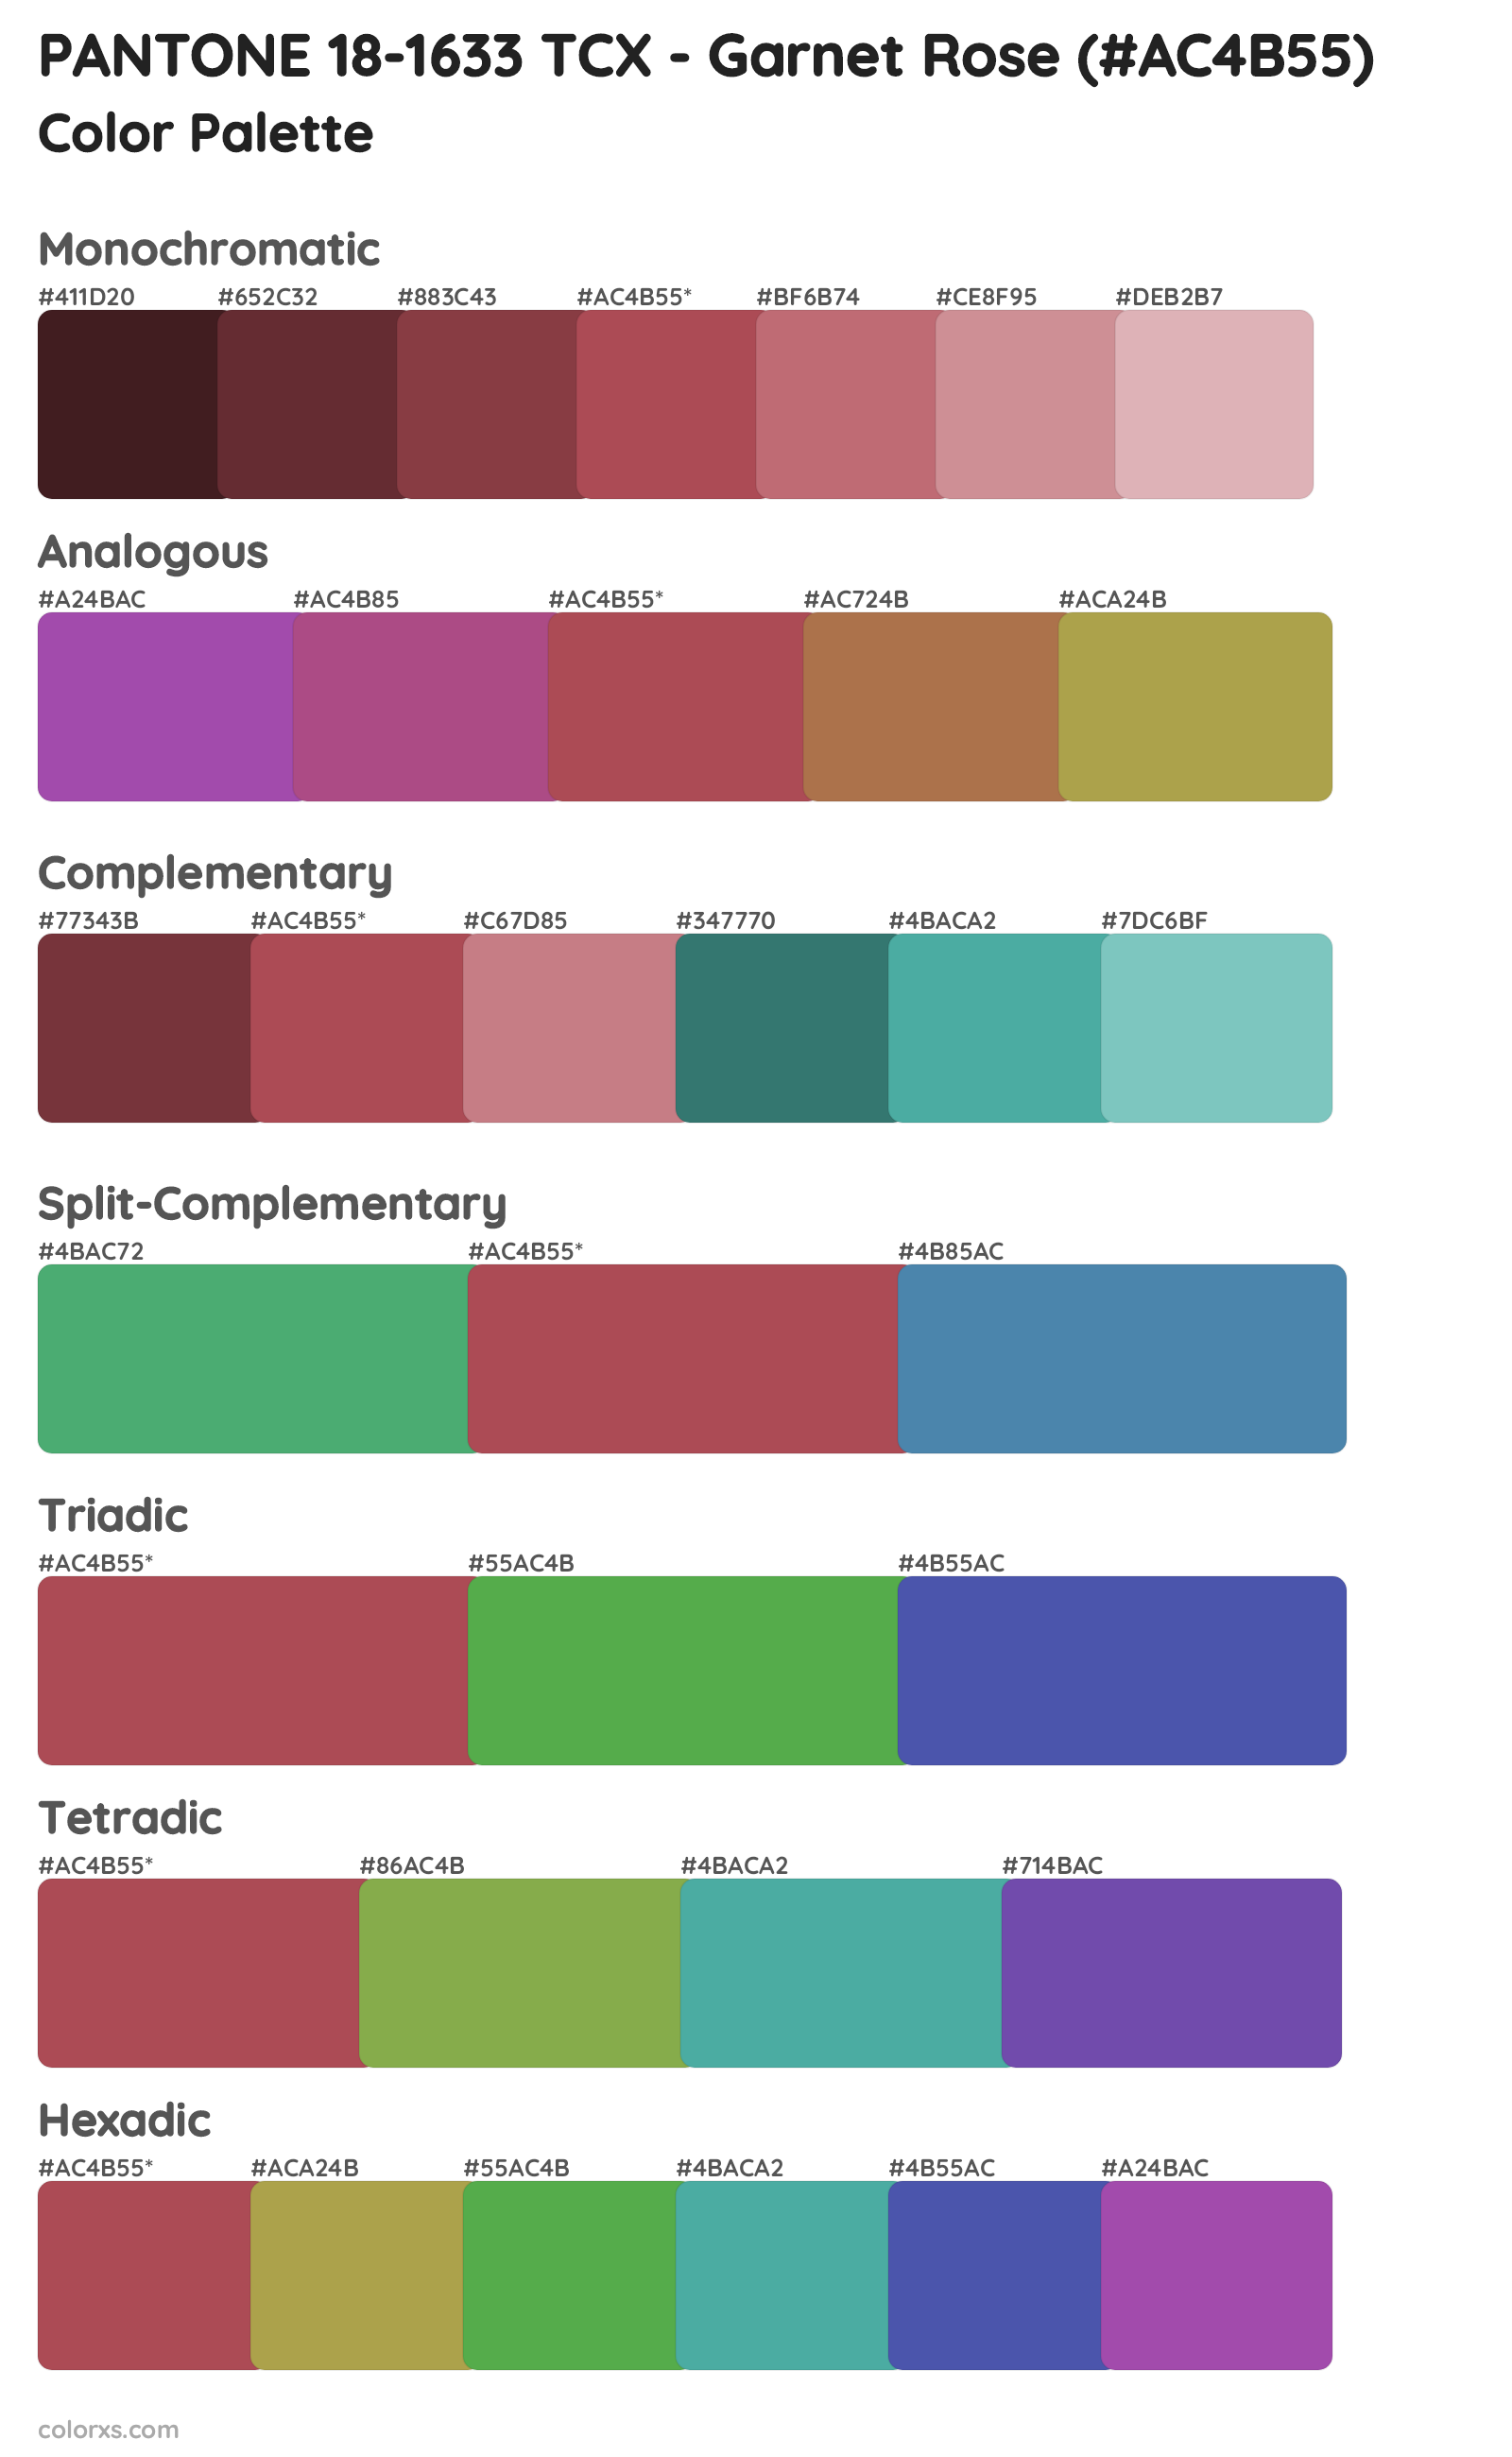 PANTONE 18-1633 TCX - Garnet Rose Color Scheme Palettes